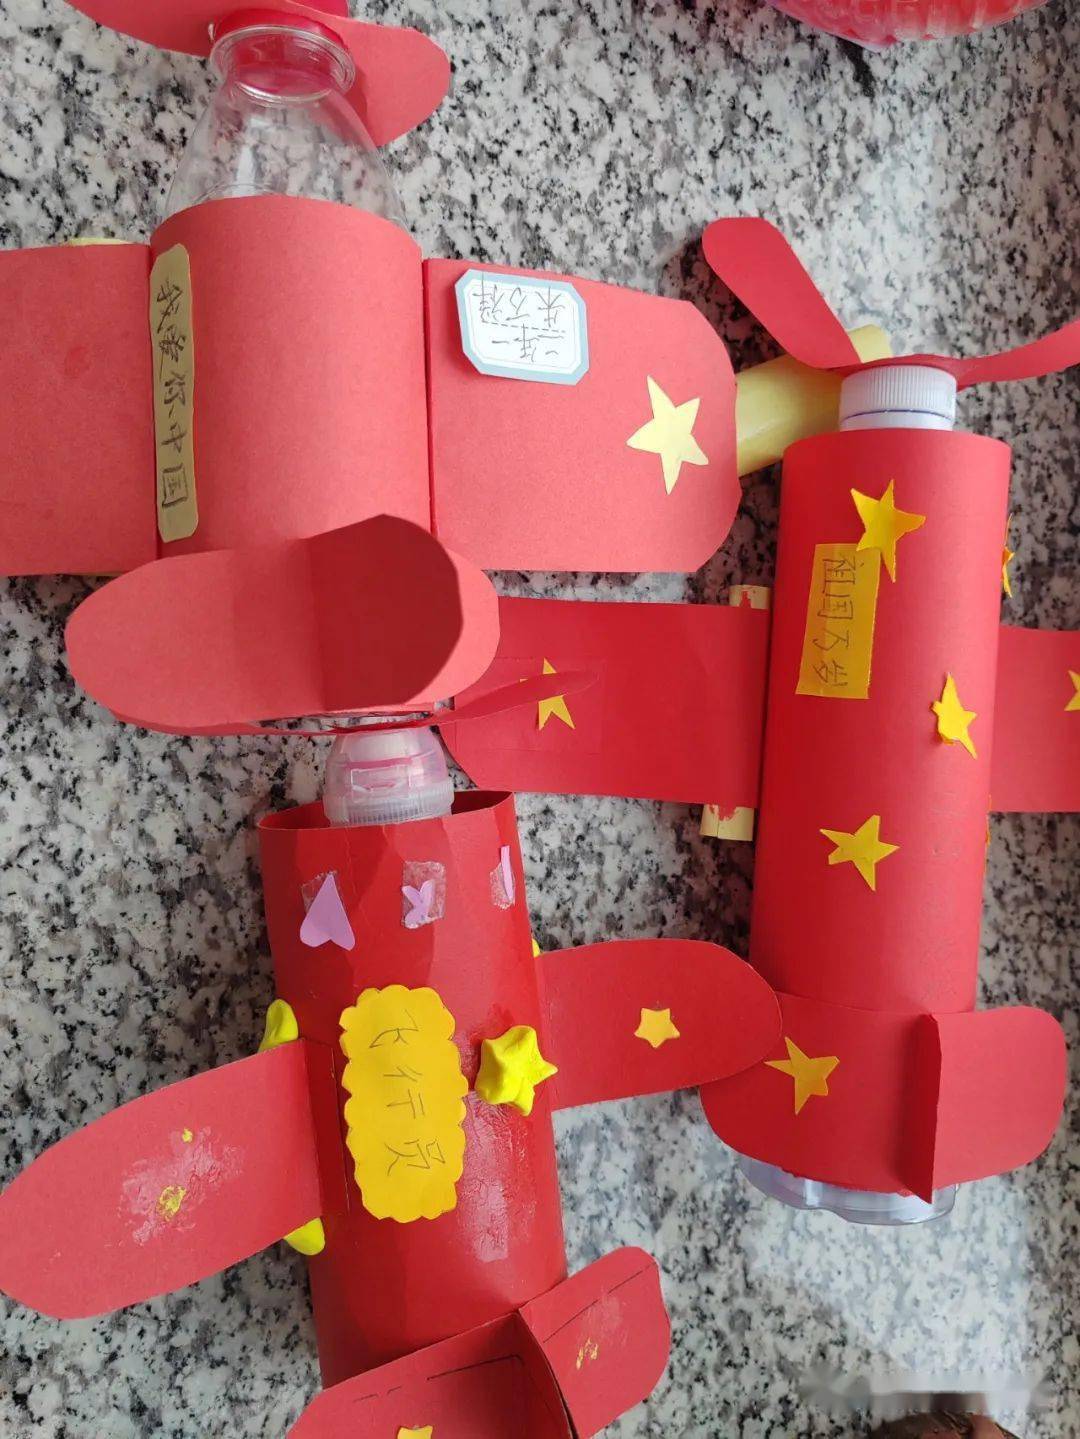 【兆麟劳动】保护环境 变废为宝——兆麟小学二年级废弃物利用展示